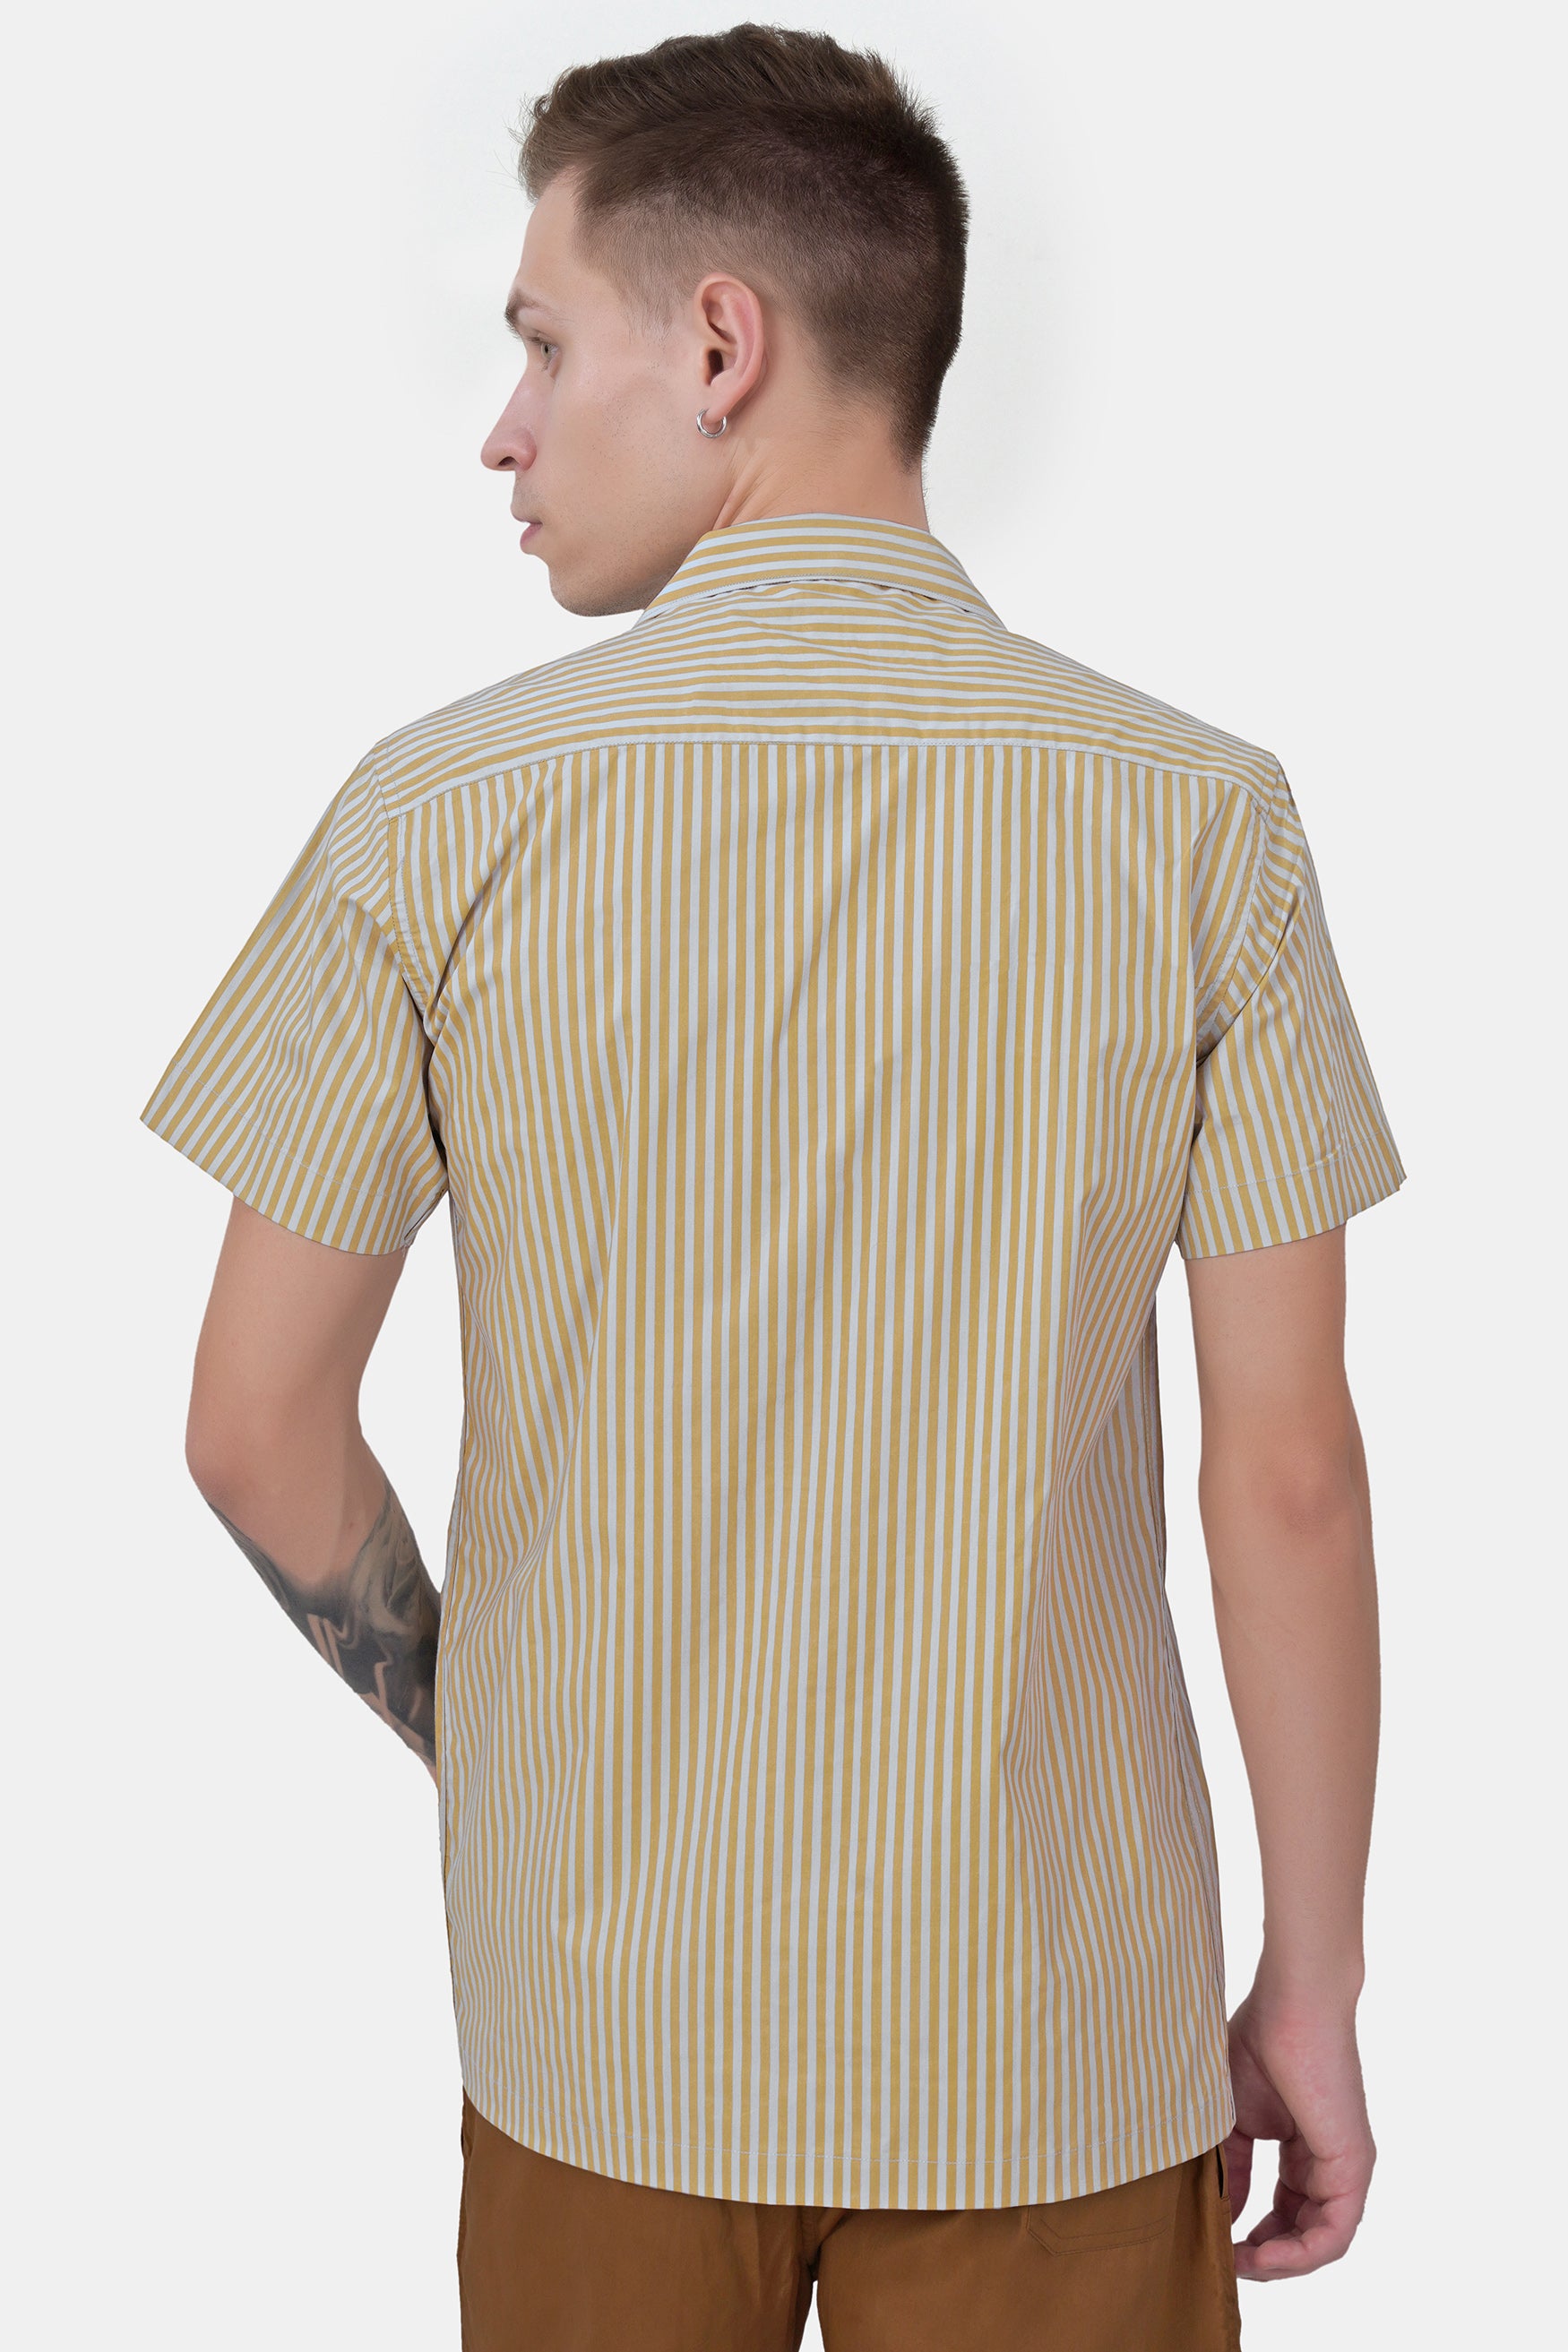 Dijon Yellow and Selago Gray Striped Premium Cotton Shirt